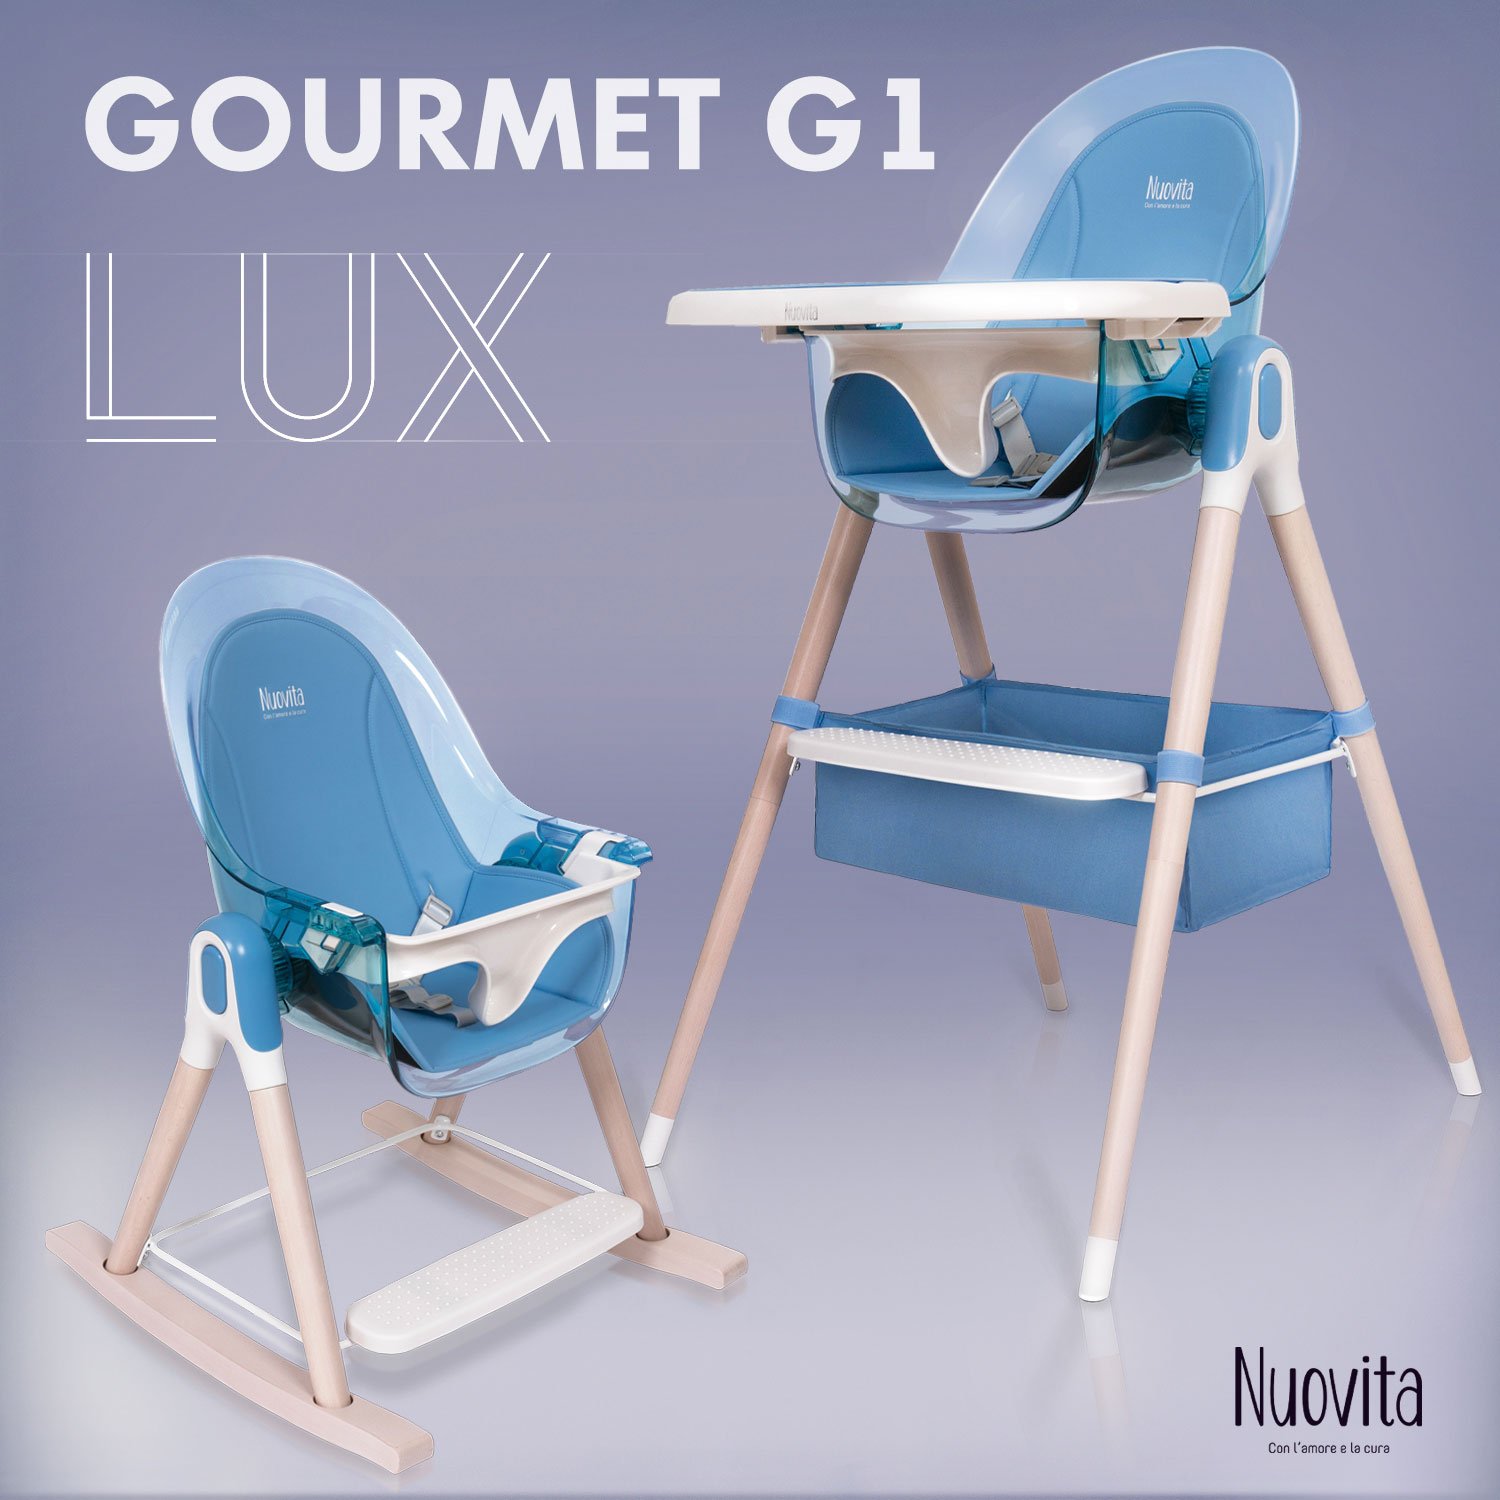 Стульчик для кормления 3 в 1 Nuovita Gourmet G1 Lux (Blu/Голубой) стульчик для кормления 3 в 1 nuovita gourmet g1 lux blu голубой